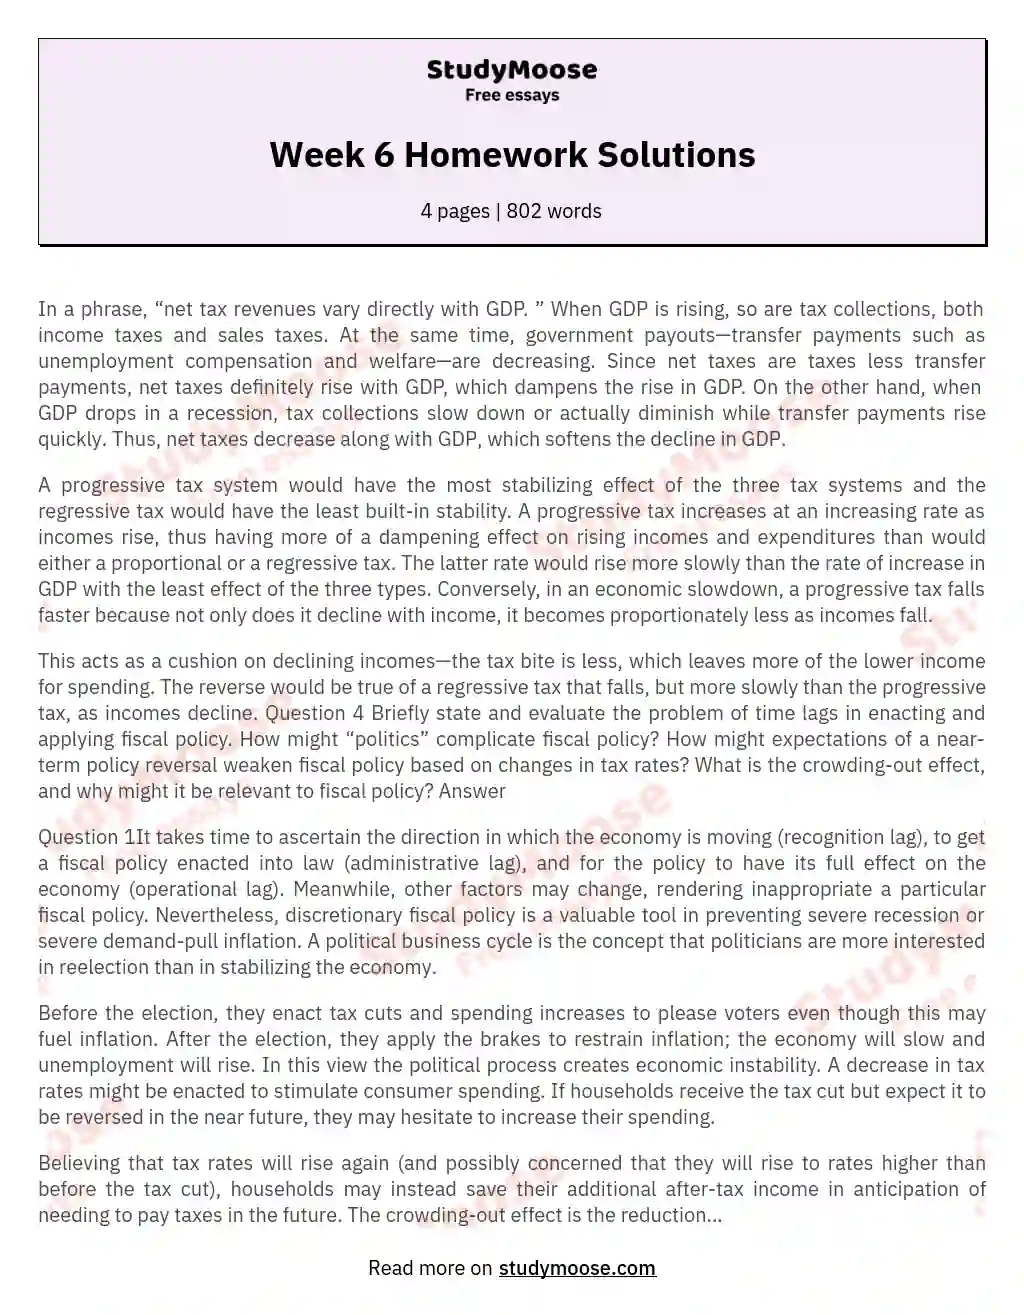 Week 6 Homework Solutions essay